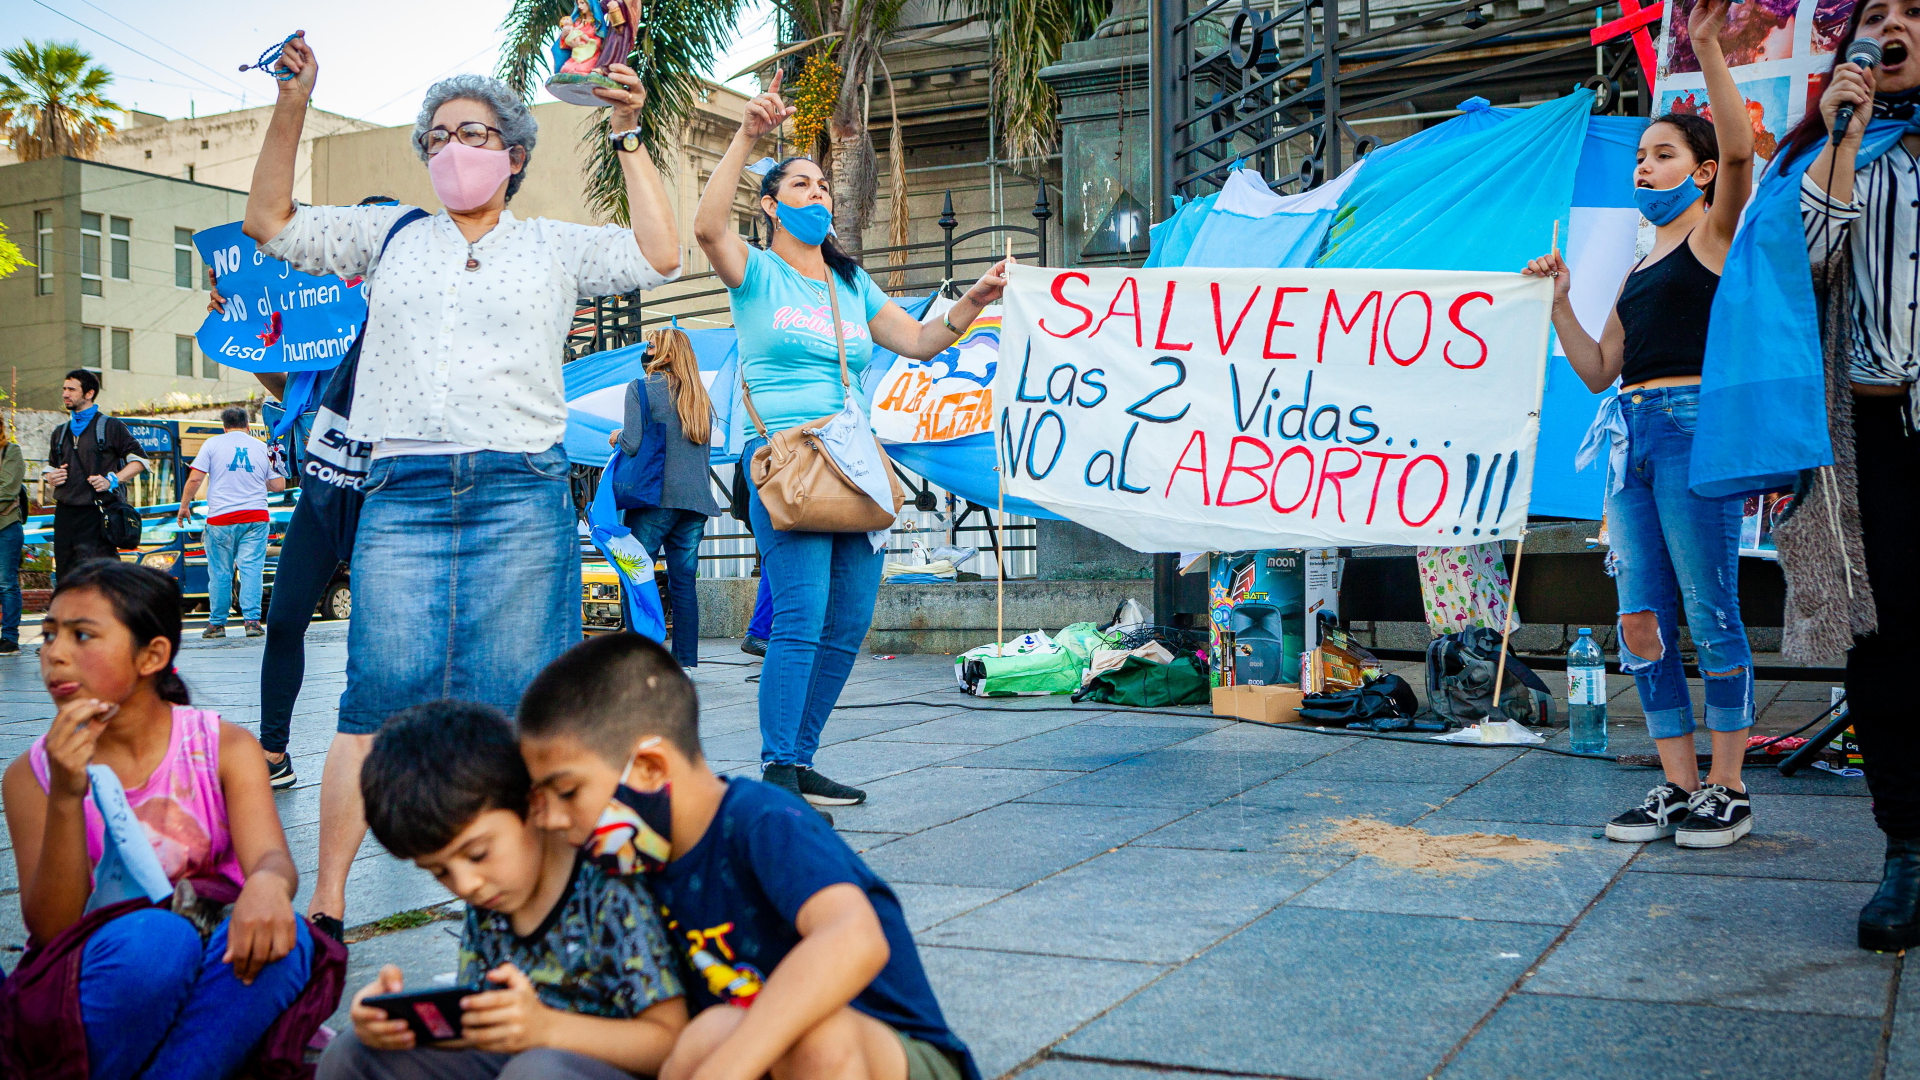 Demo für Legalisierung von Schwangerschaftsabbrüchen in Argentinien | dpa